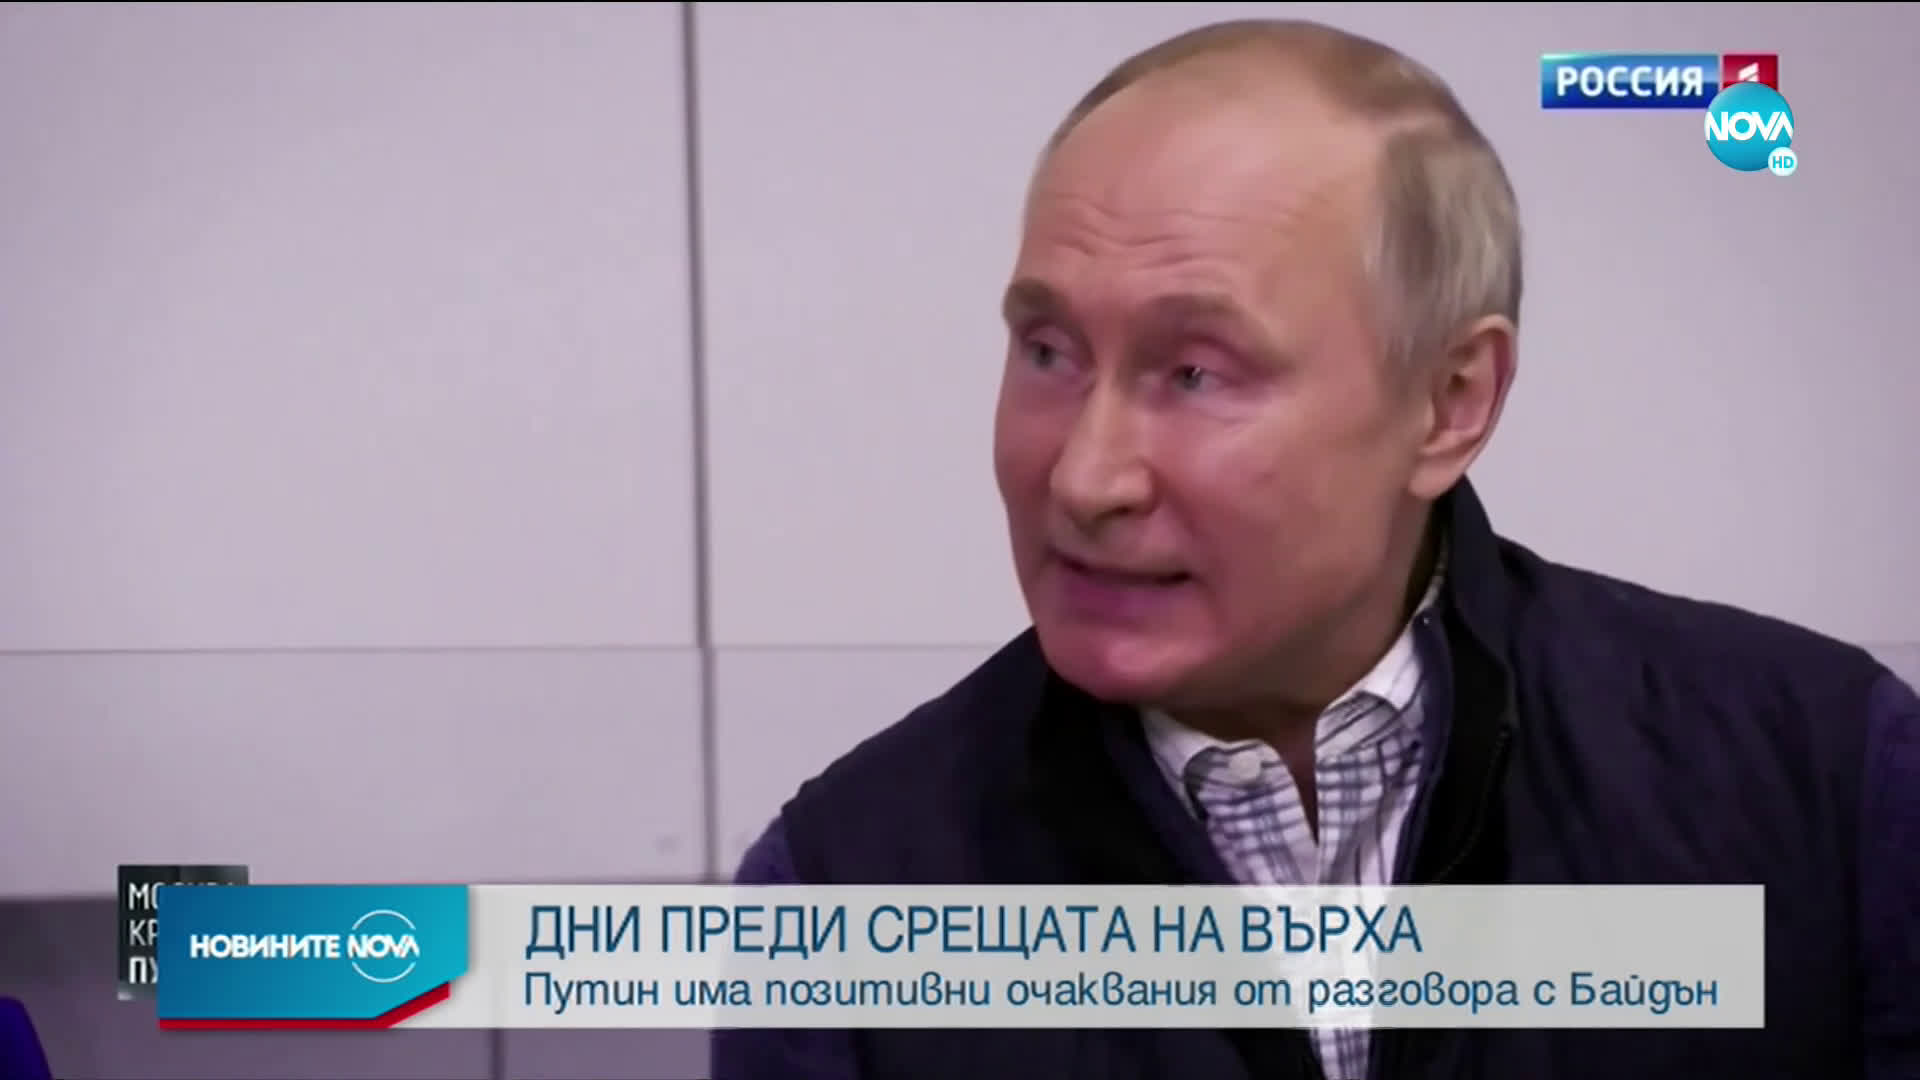 ДНИ ПРЕДИ СРЕЩАТА НА ВЪРХА: Путин с позитивни очаквания от разговора с Байдън